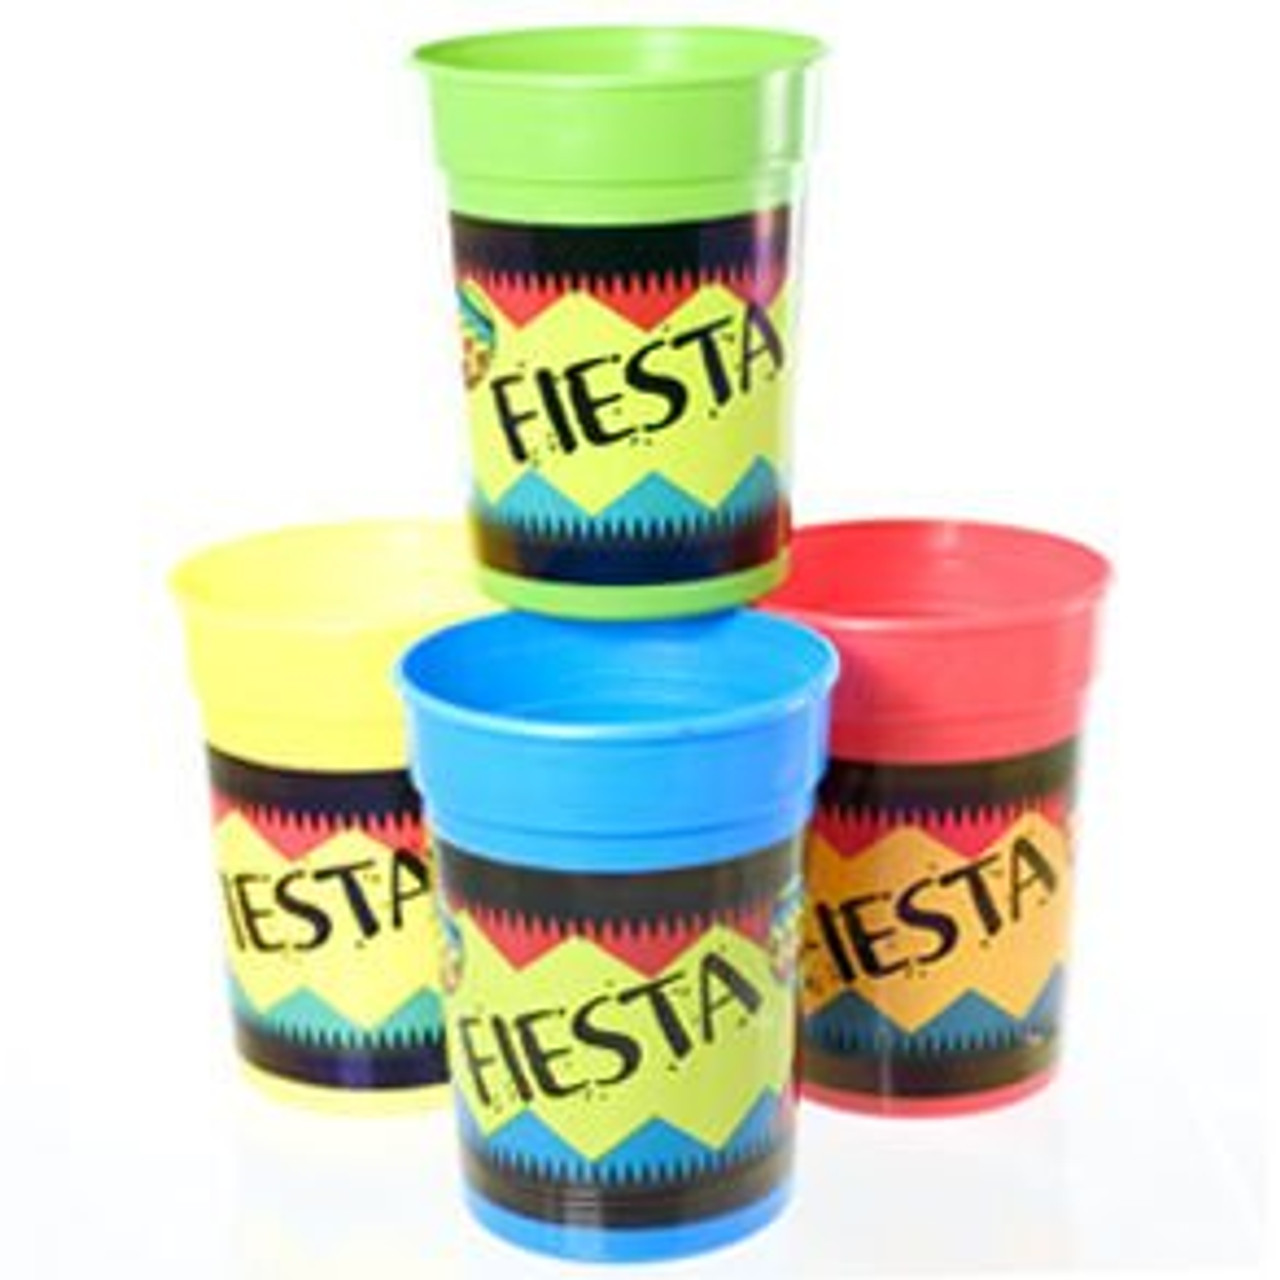 Fiesta Party Cups - Cinco de Mayo Cups